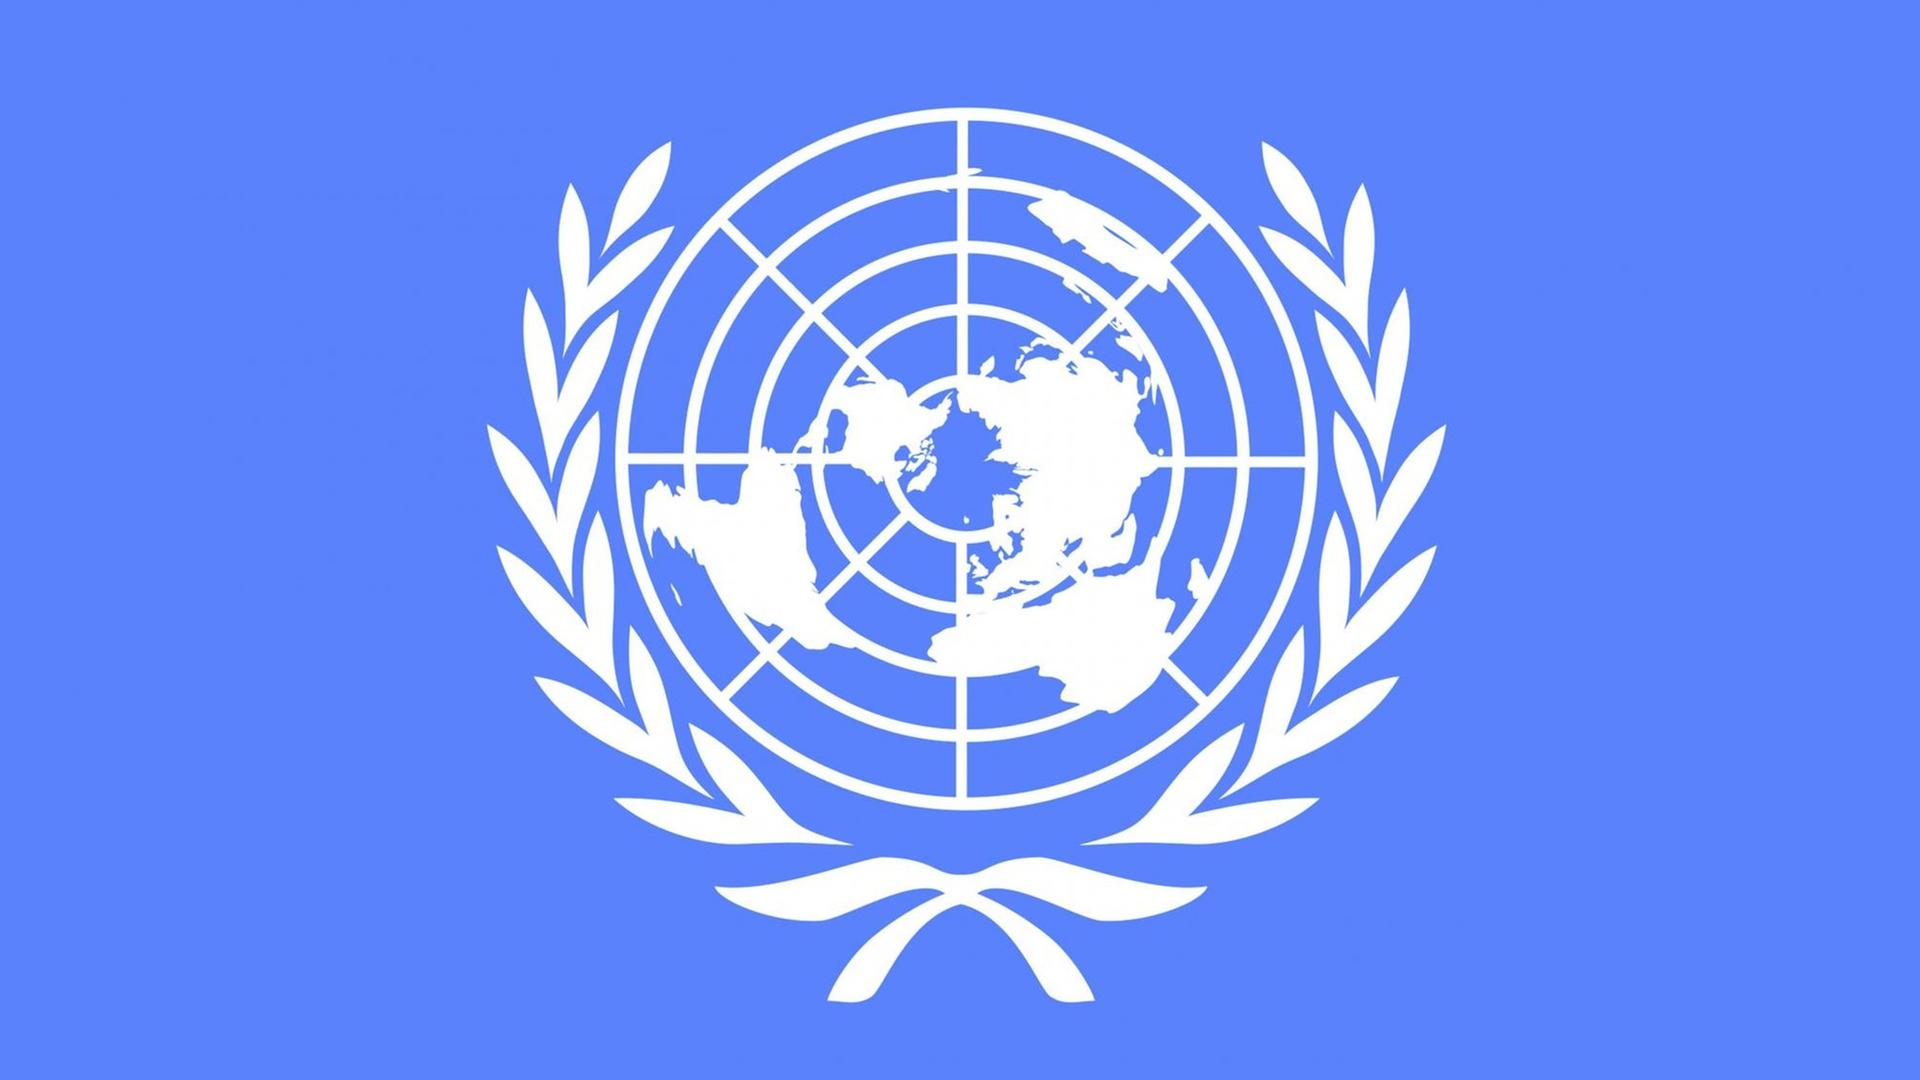 Sie sehen das Logo der Vereinten Nationen - weiß auf blauem Grund.